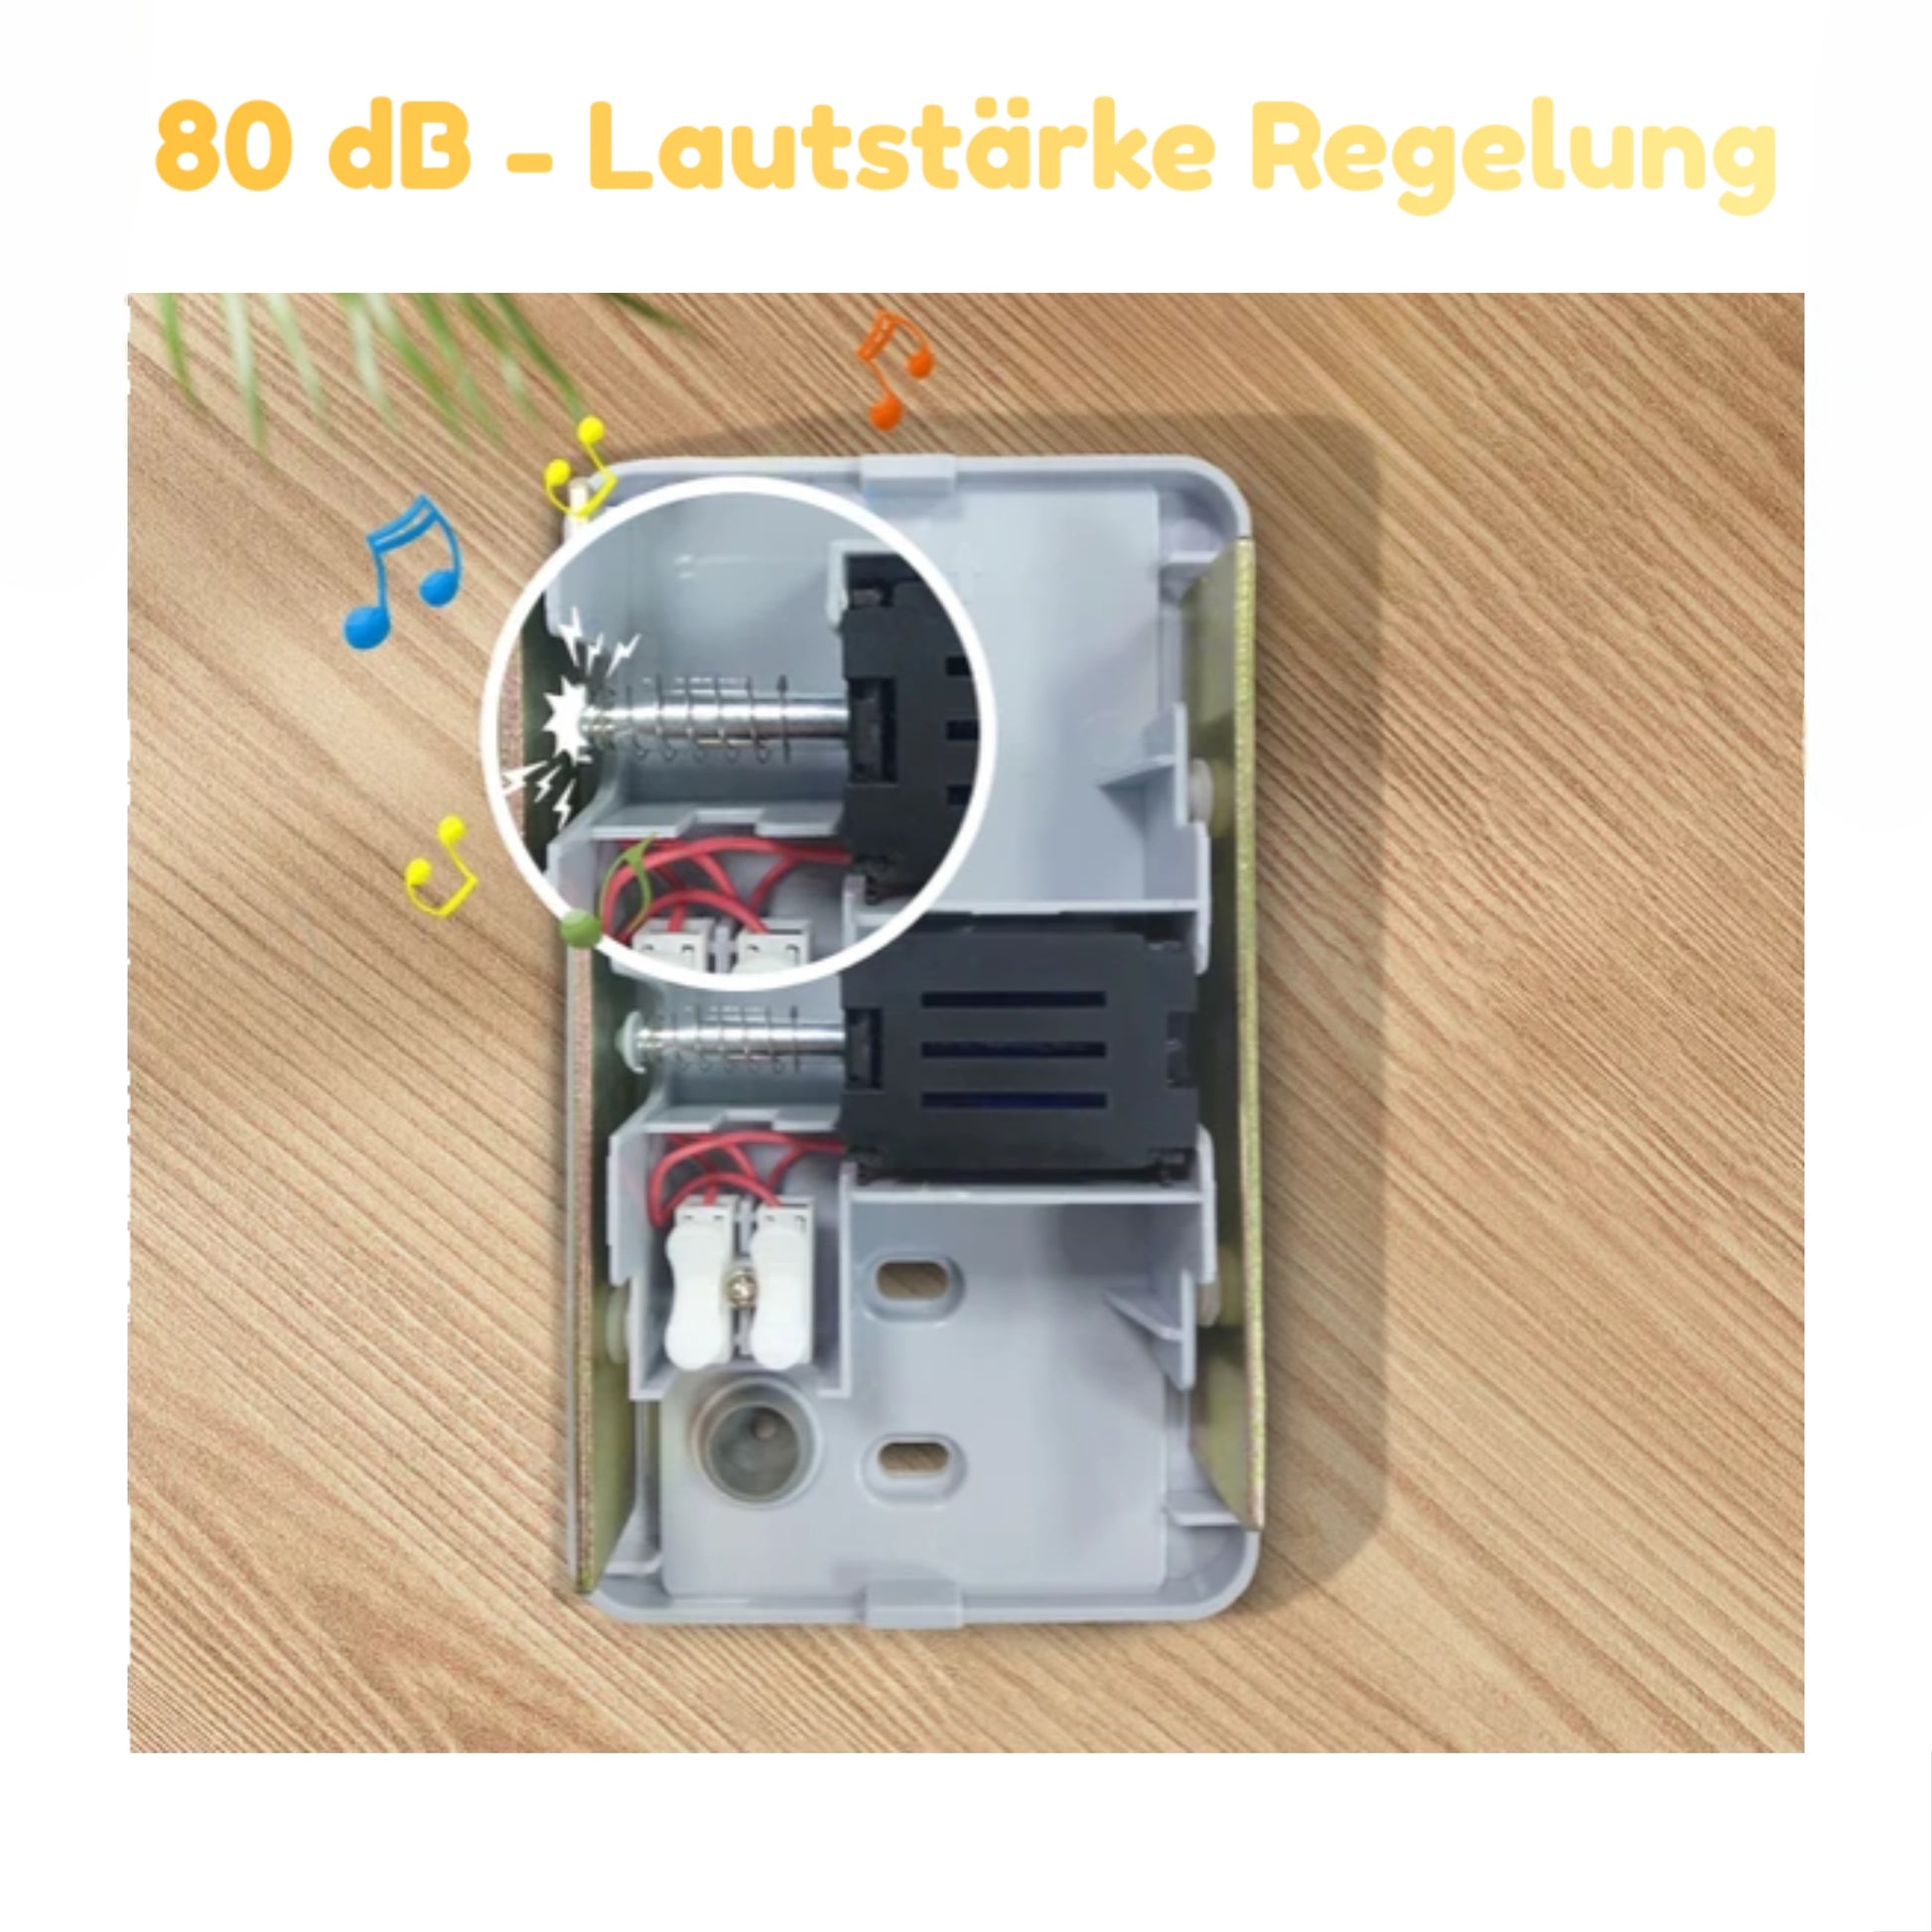 Haus Türklingel Funk 150 m Reichweite mit Beleuchtung inkl. Langzeit Batterien 80dB Lautstärkenregelung